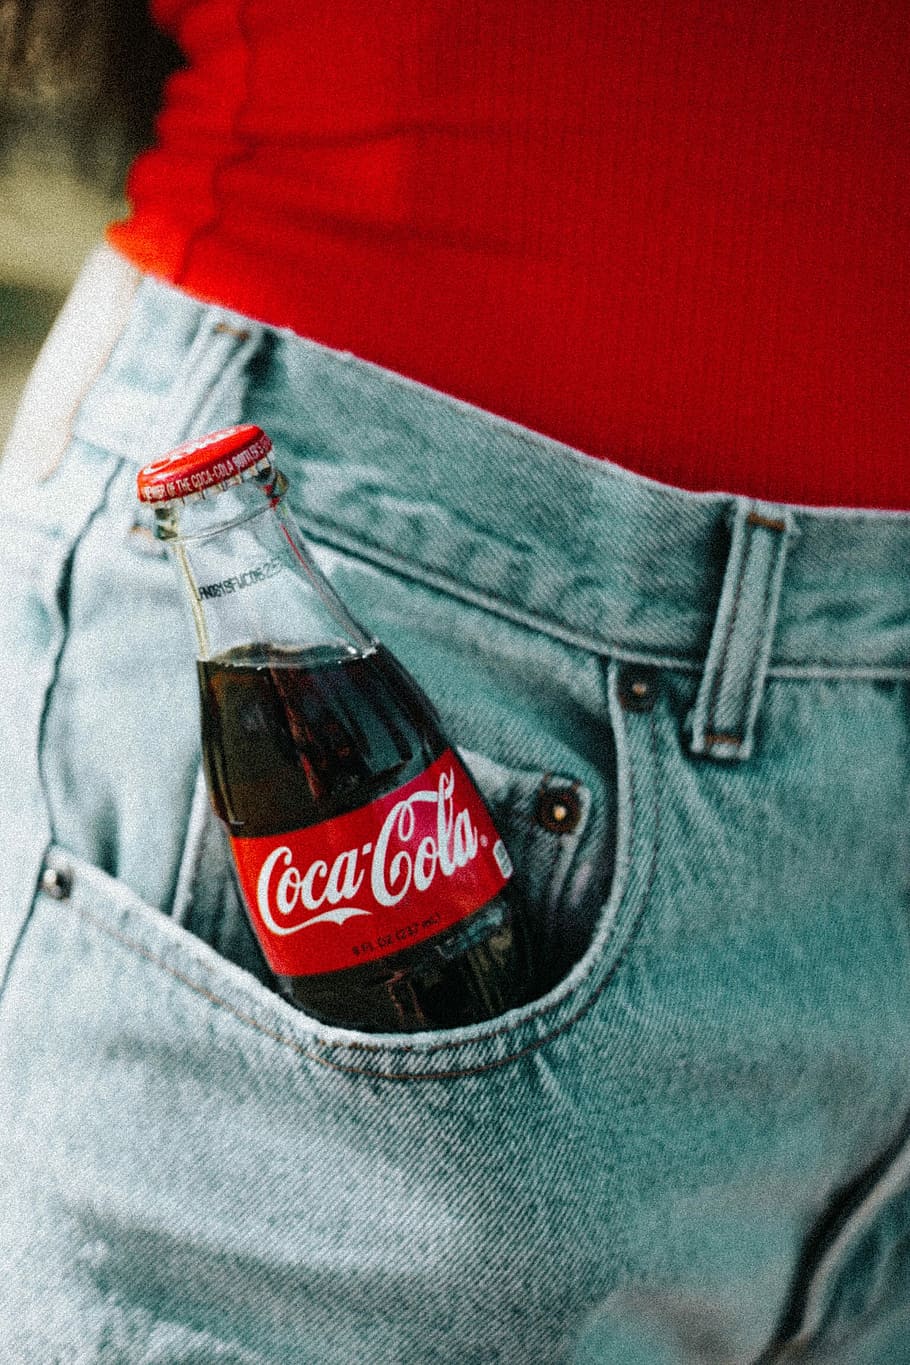 Coca-Cola glass bottle on pocket, Coca-Cola glass bottle inside jeans pocket, HD wallpaper